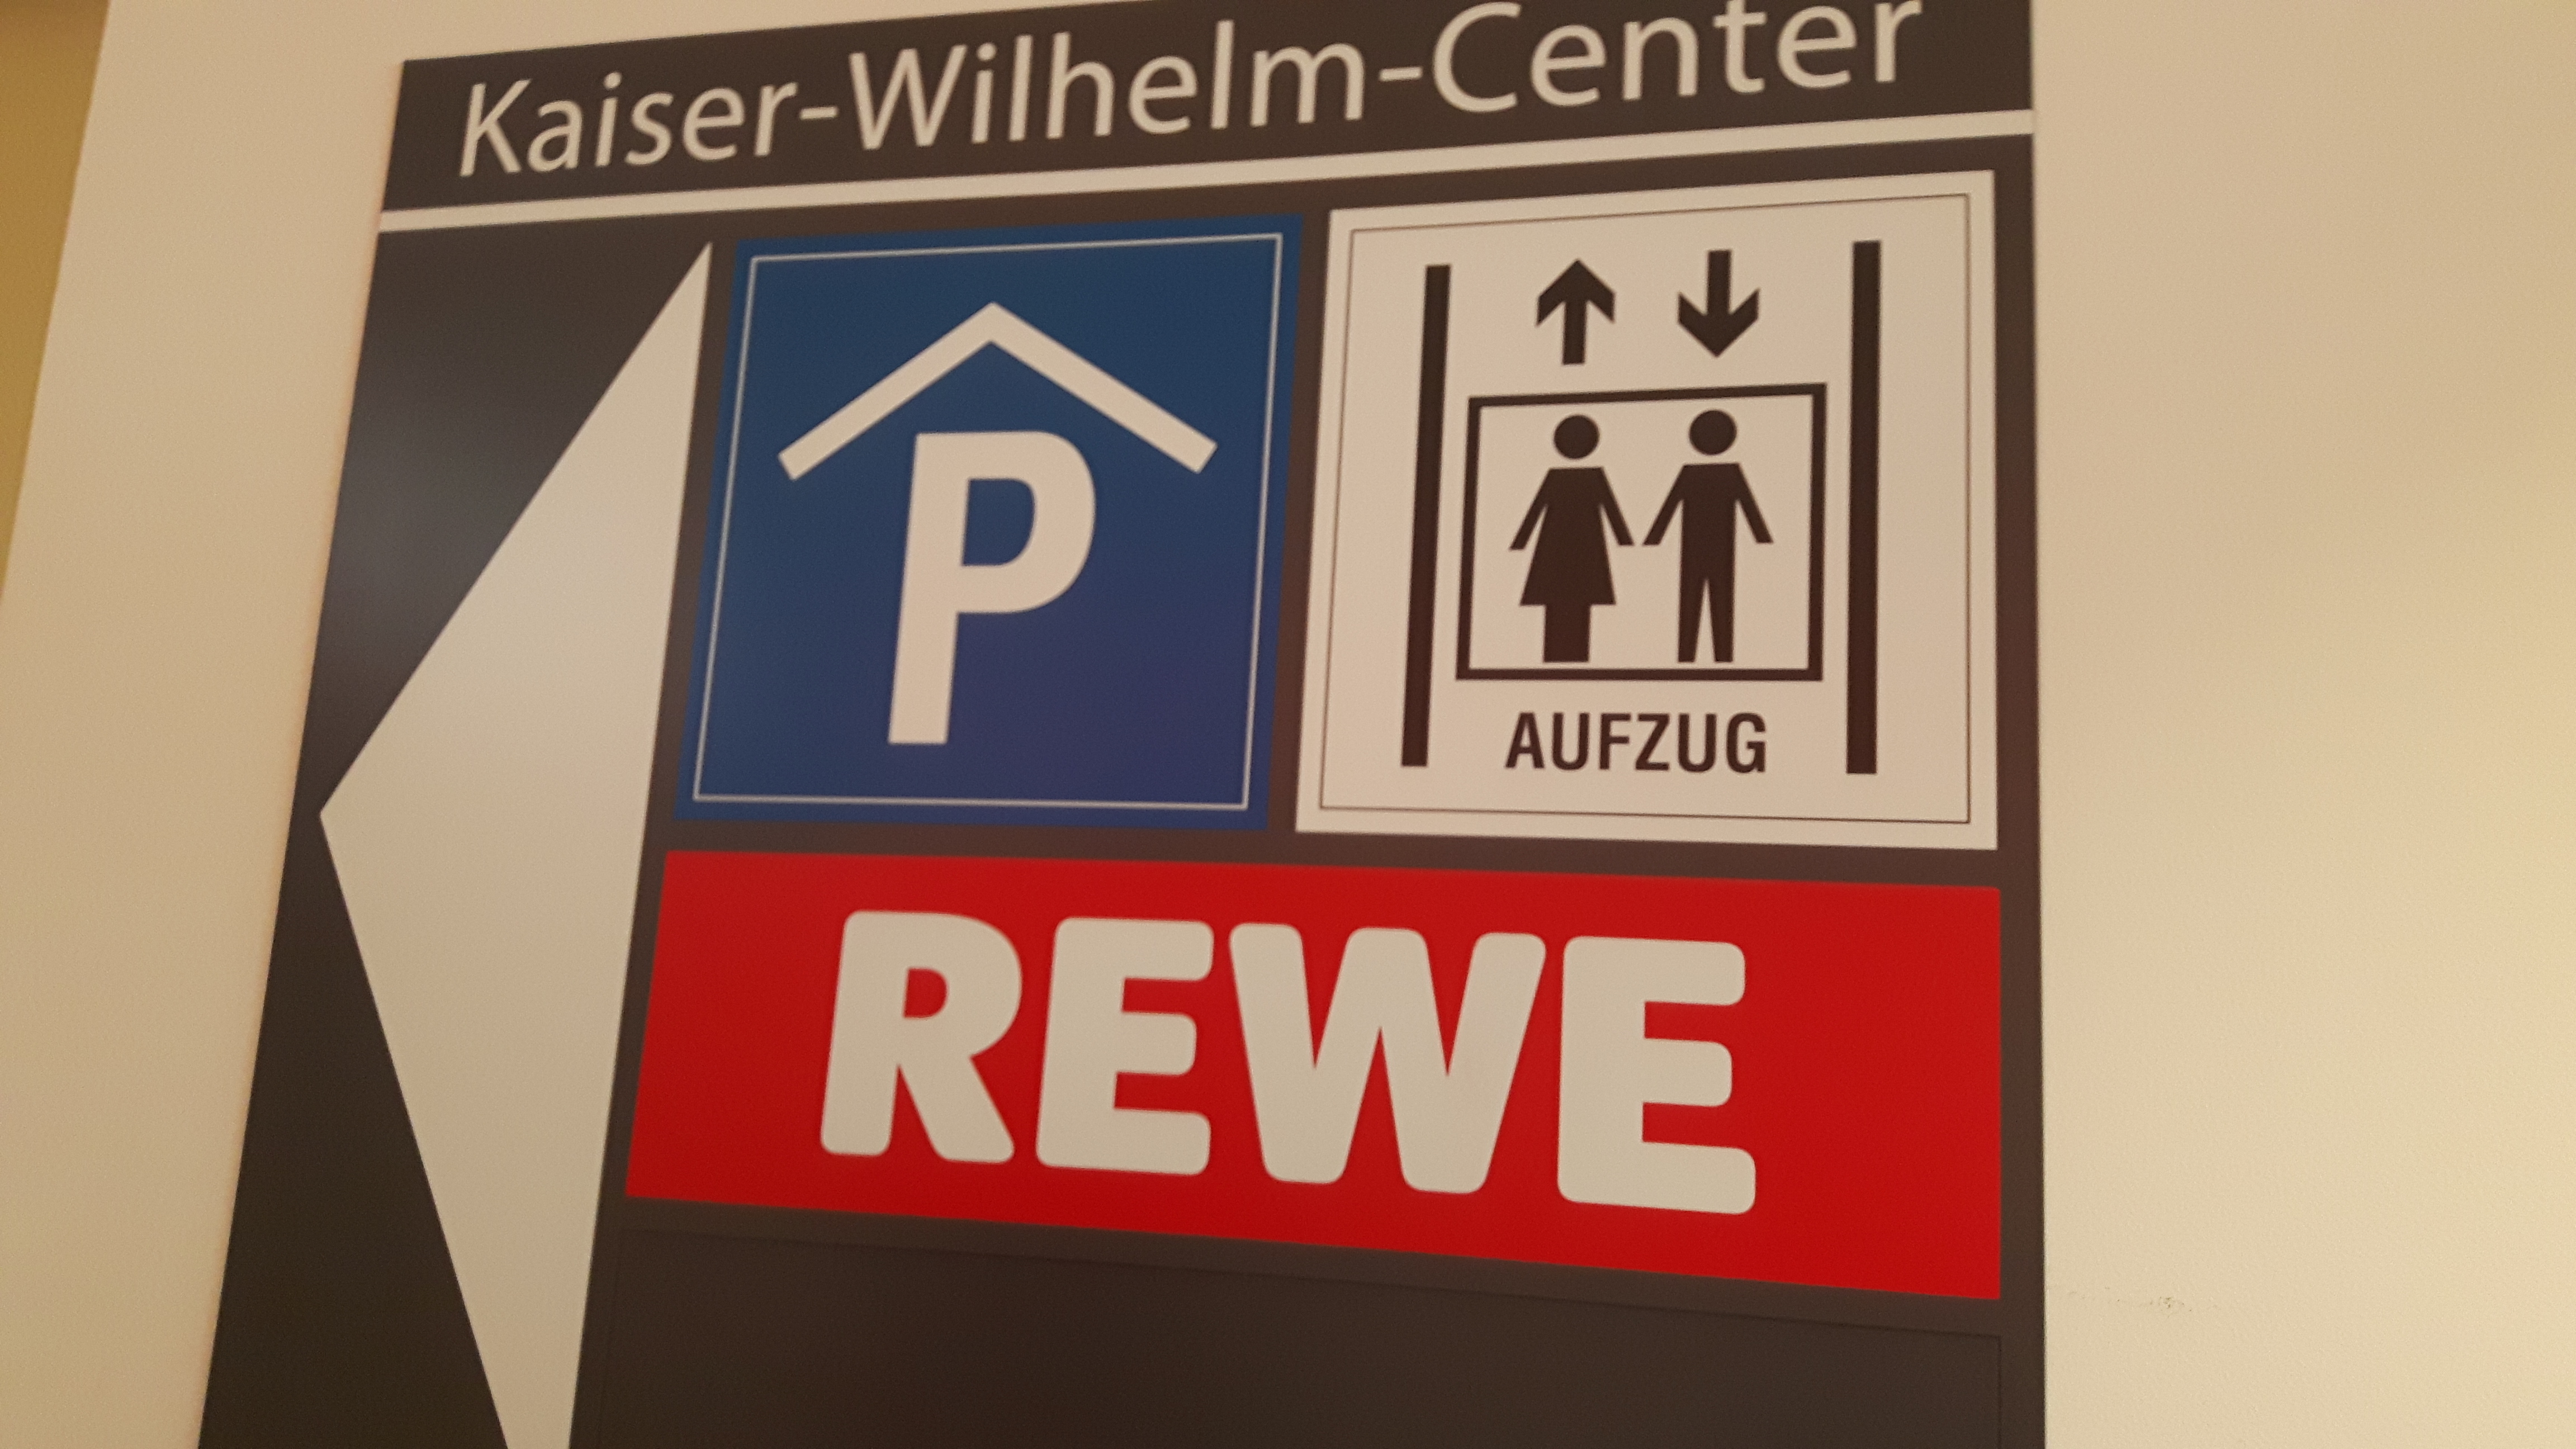 REWE Kaisers K Wilhelm Center